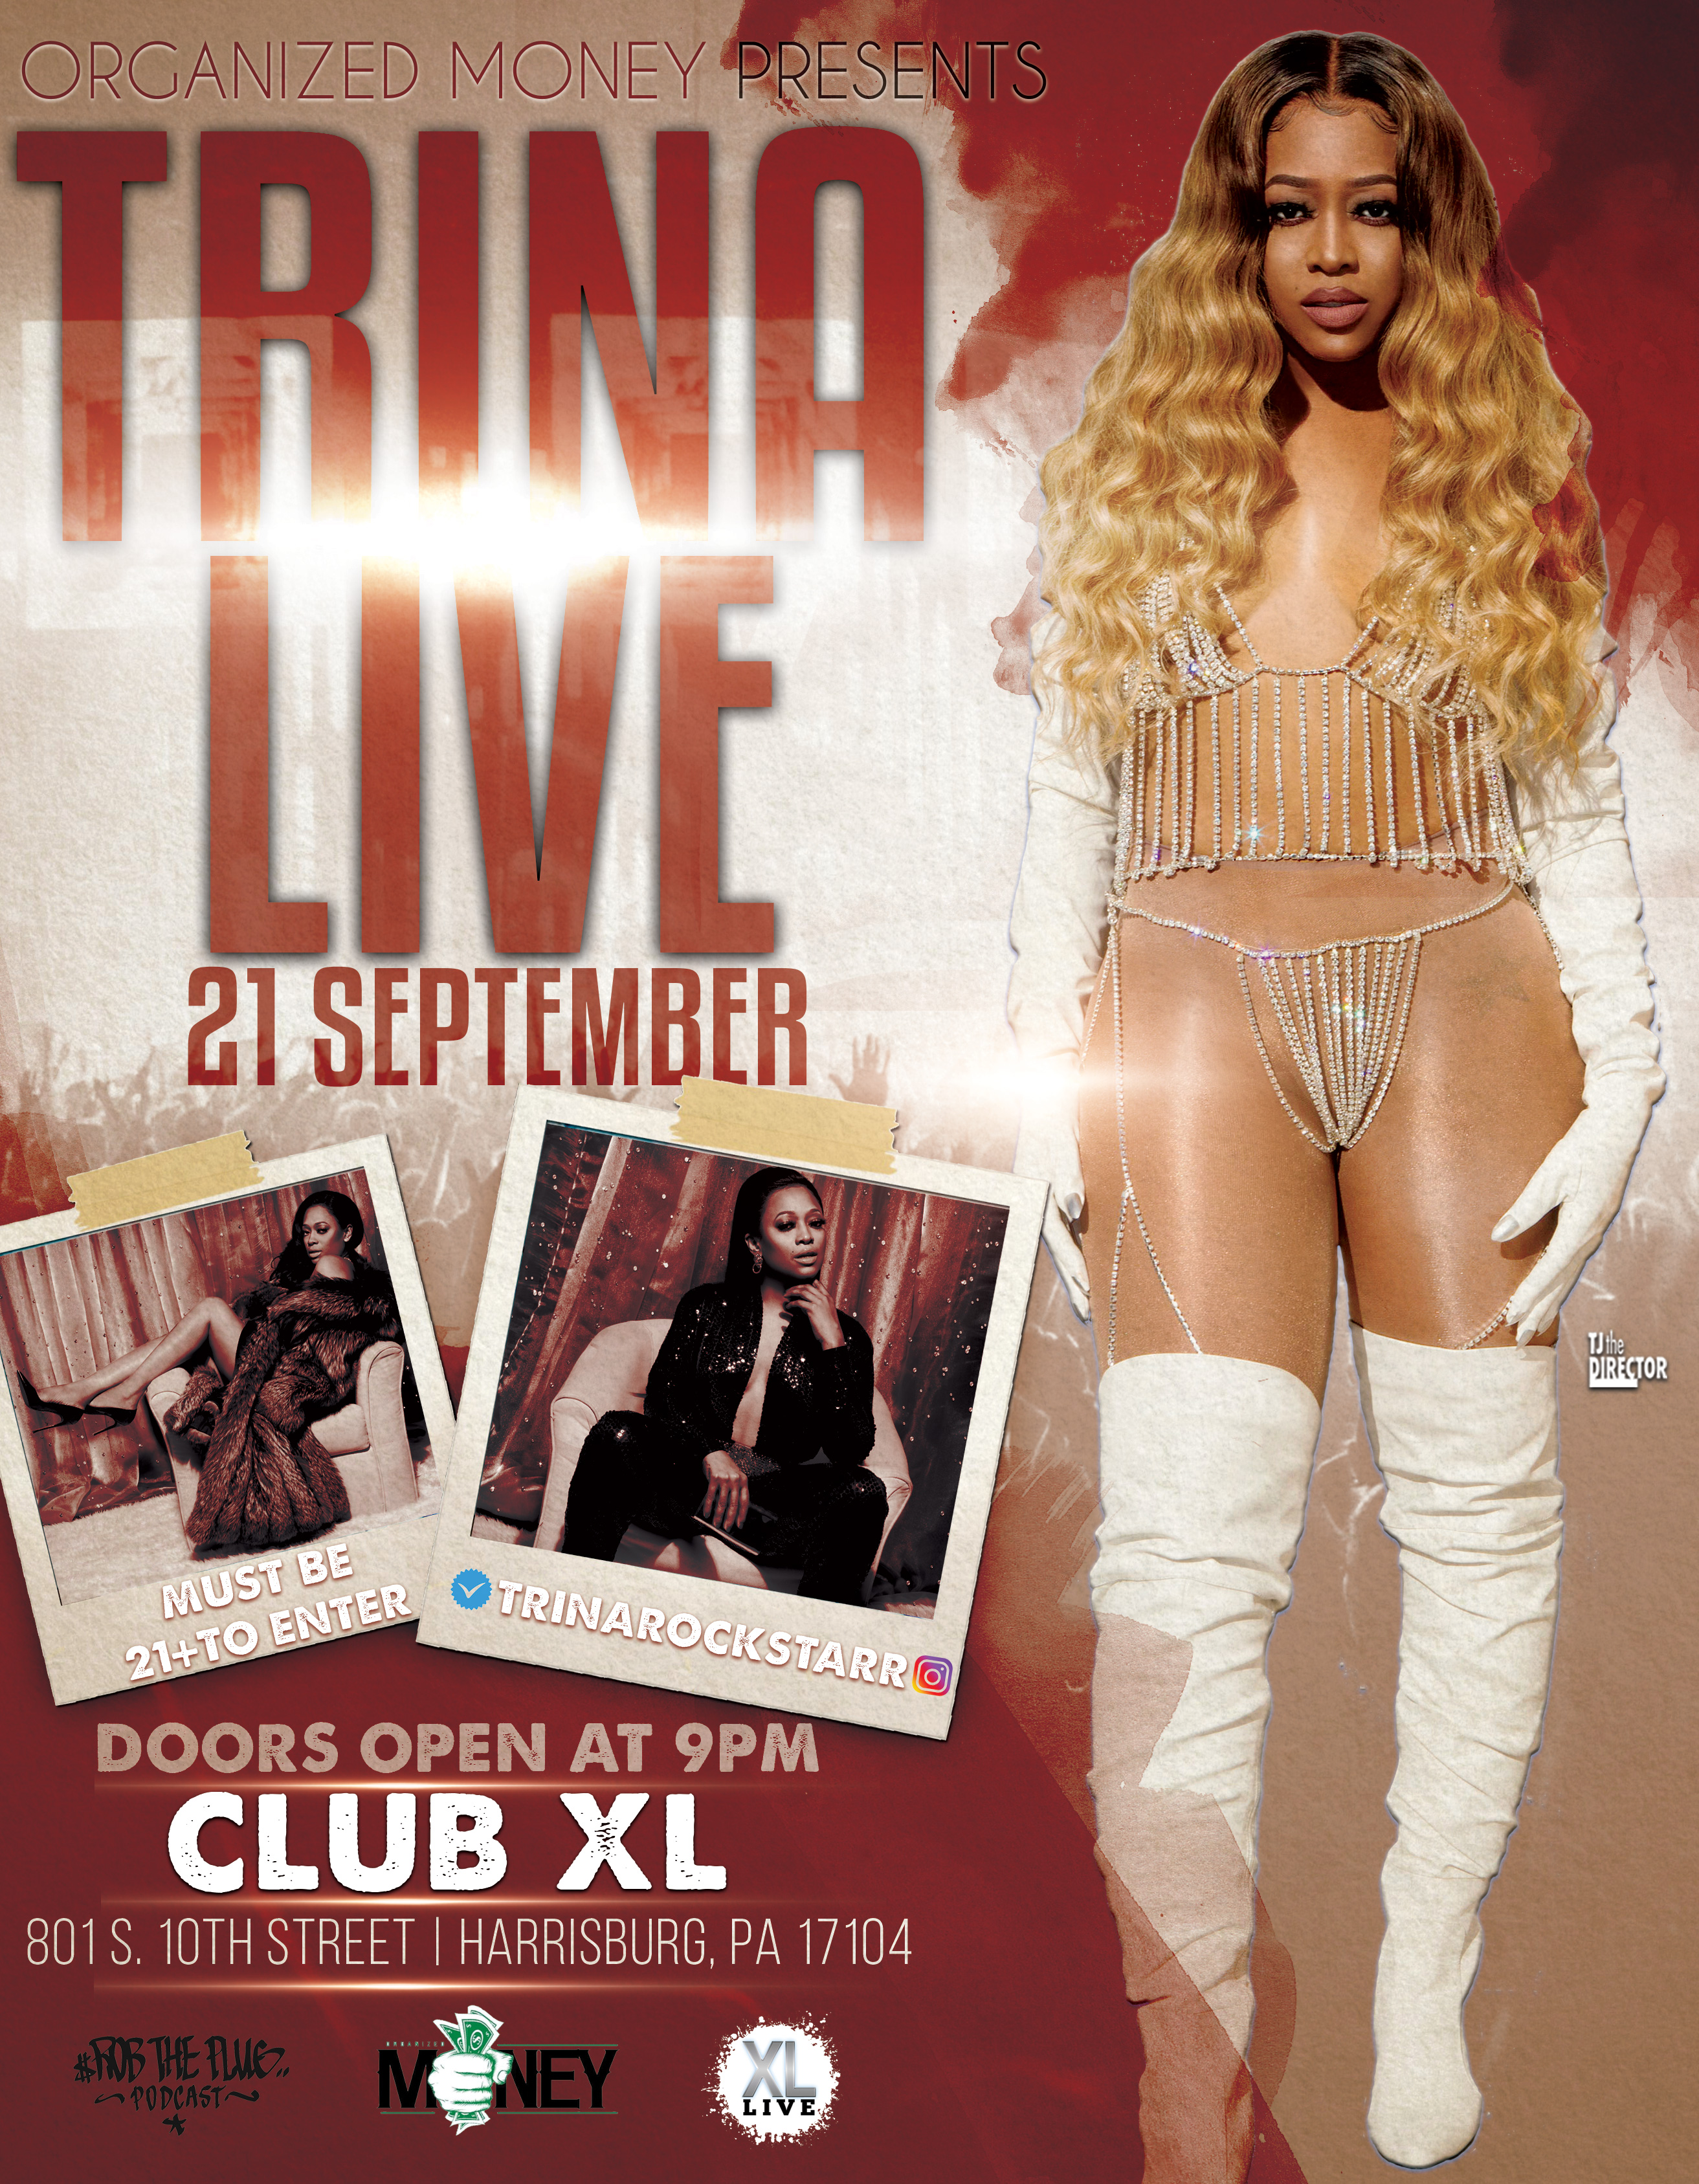 Trina Concert At XL Live (Details Inside)